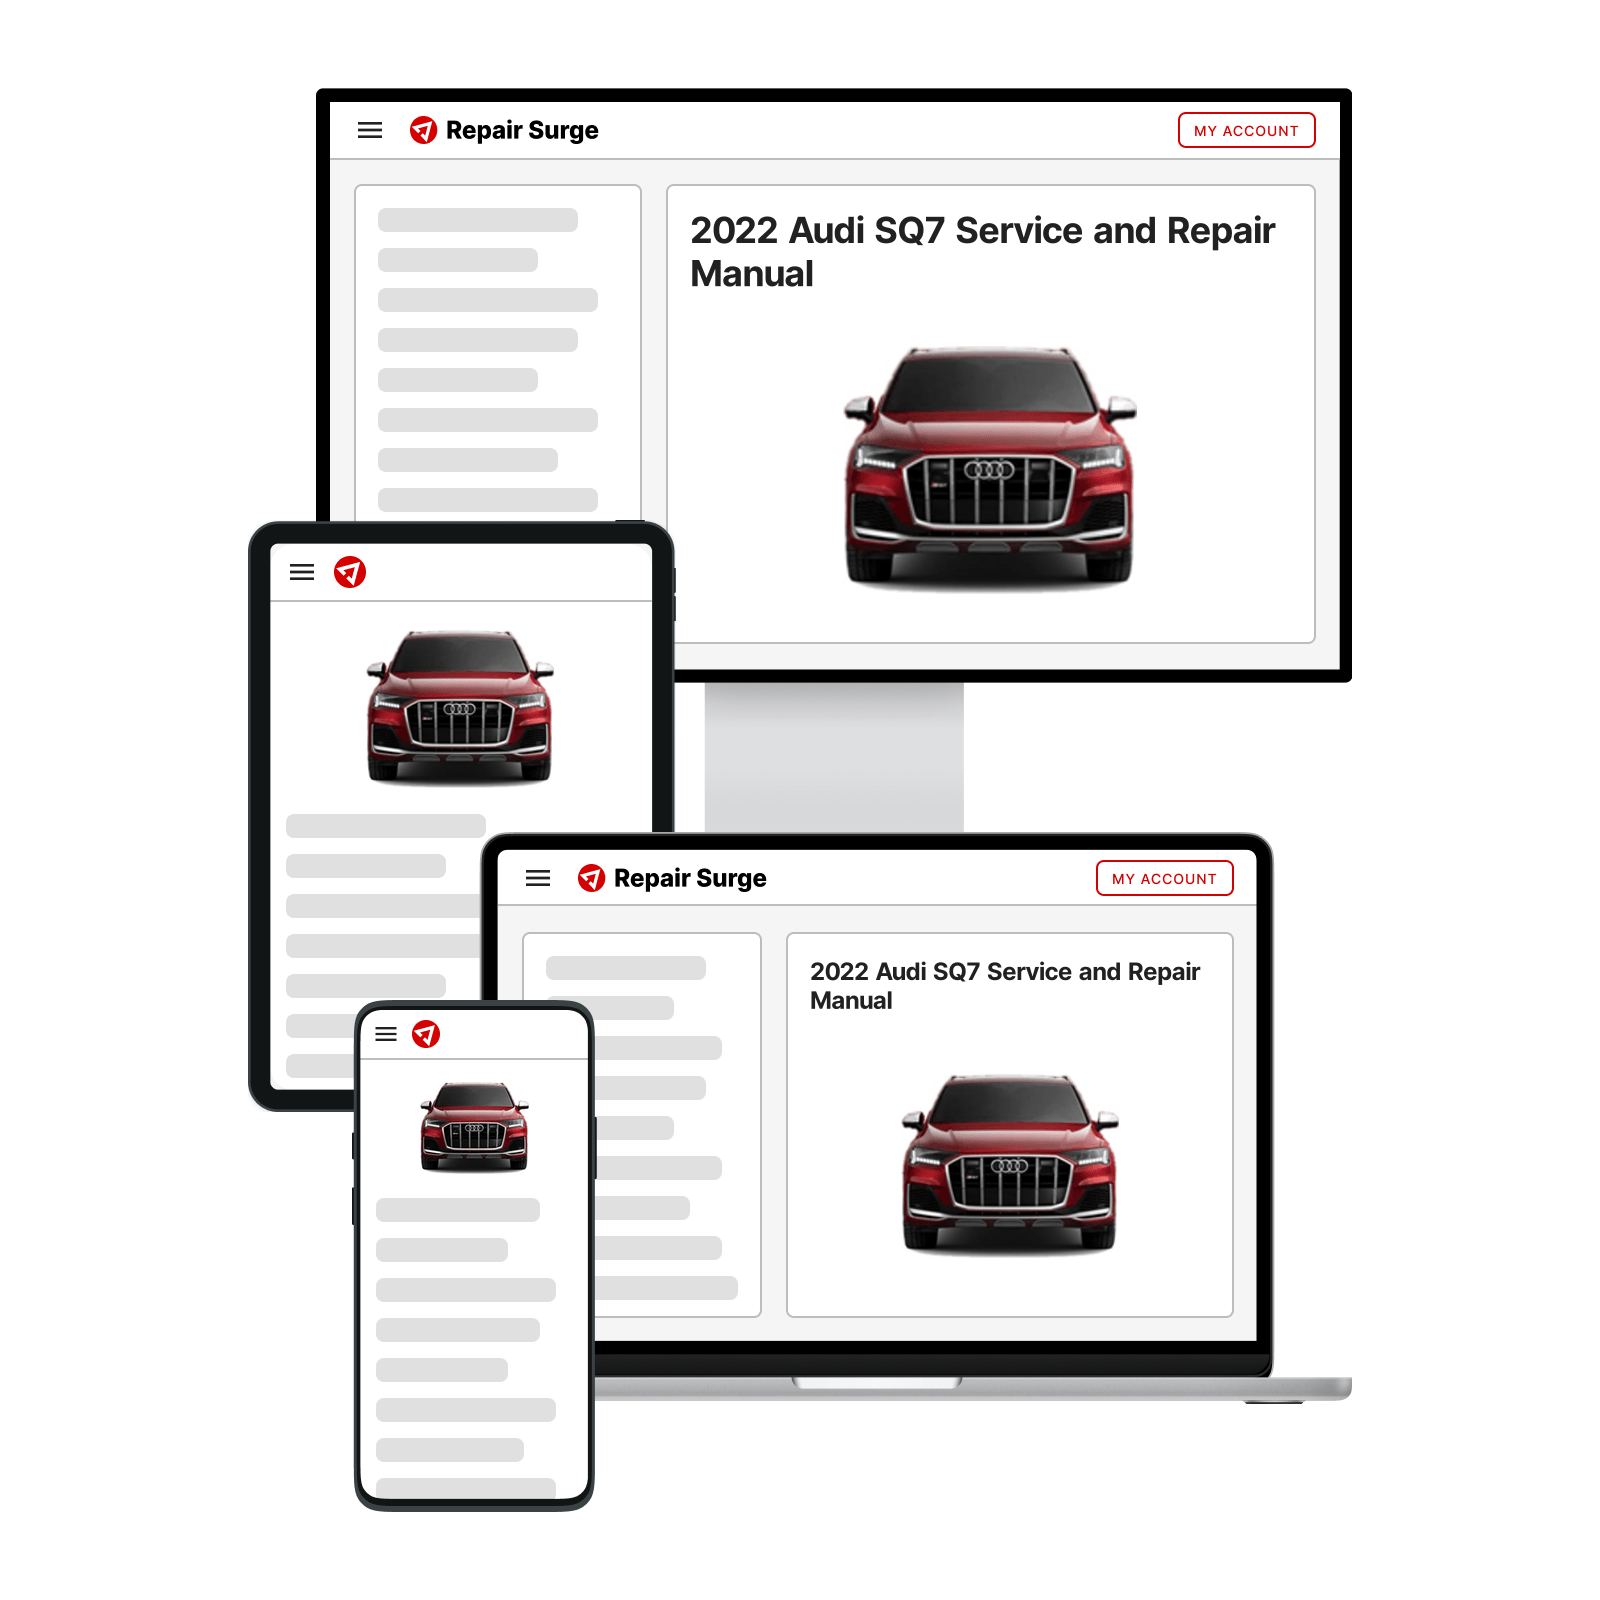 2022 Audi SQ7 service and repair manual hero image